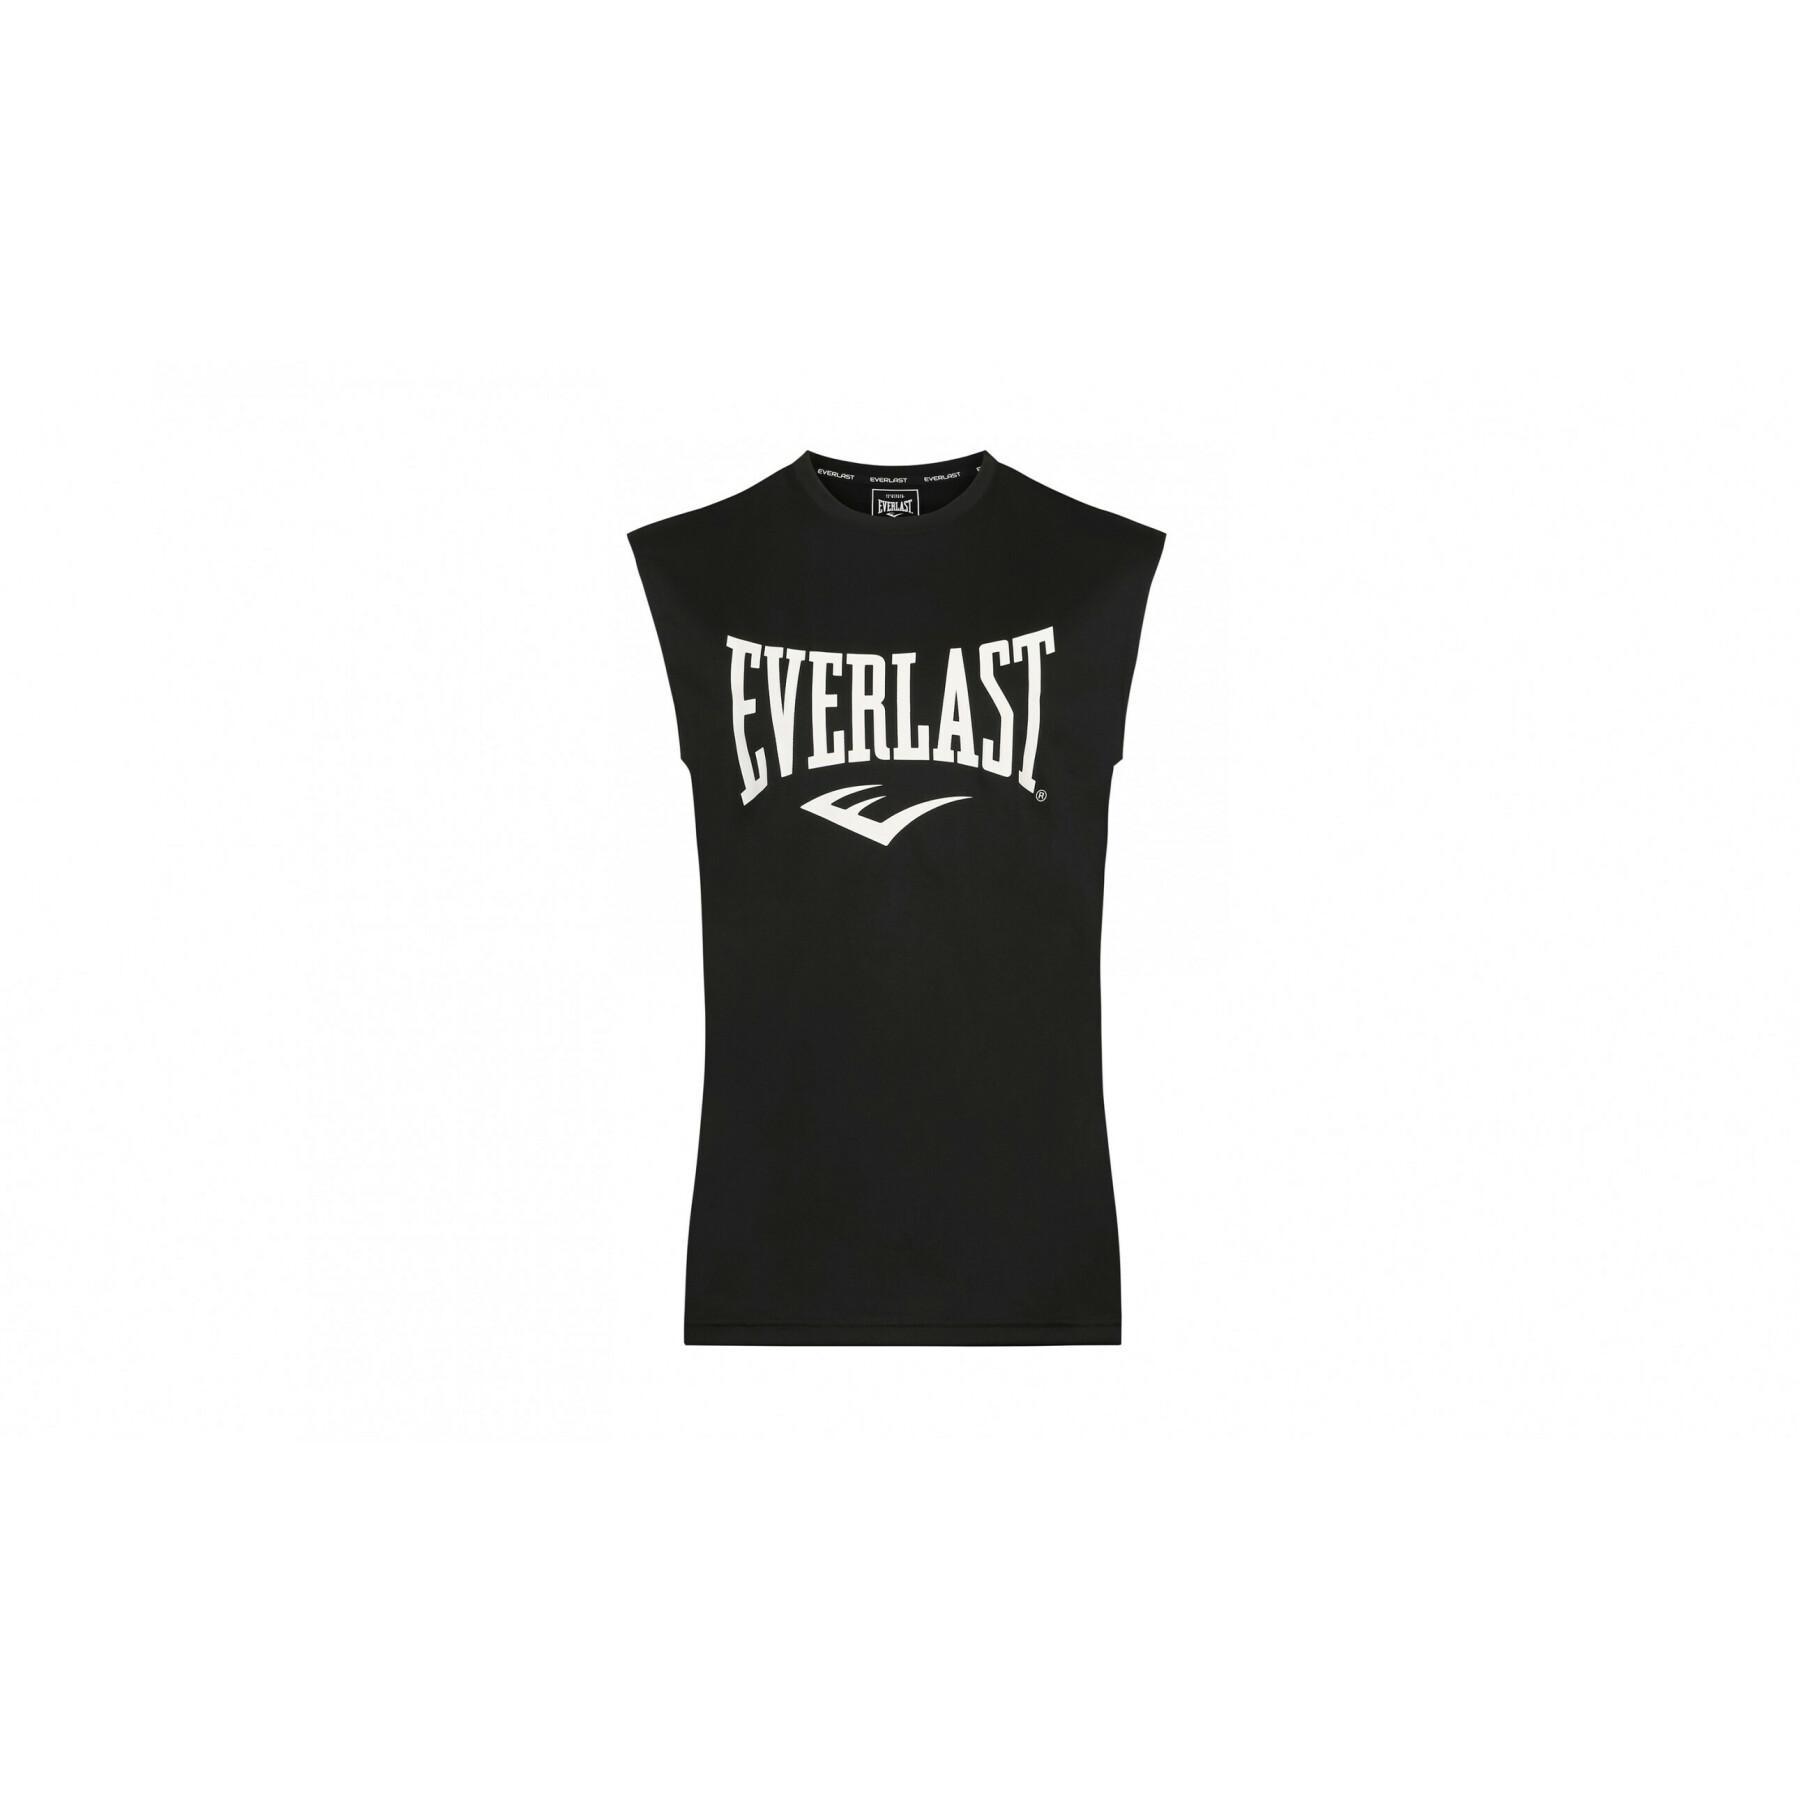 Boek ontsnapping uit de gevangenis Zwembad Sleeveless T-shirt Everlast sylvan - T-shirts - Men's Clothing - Fitness